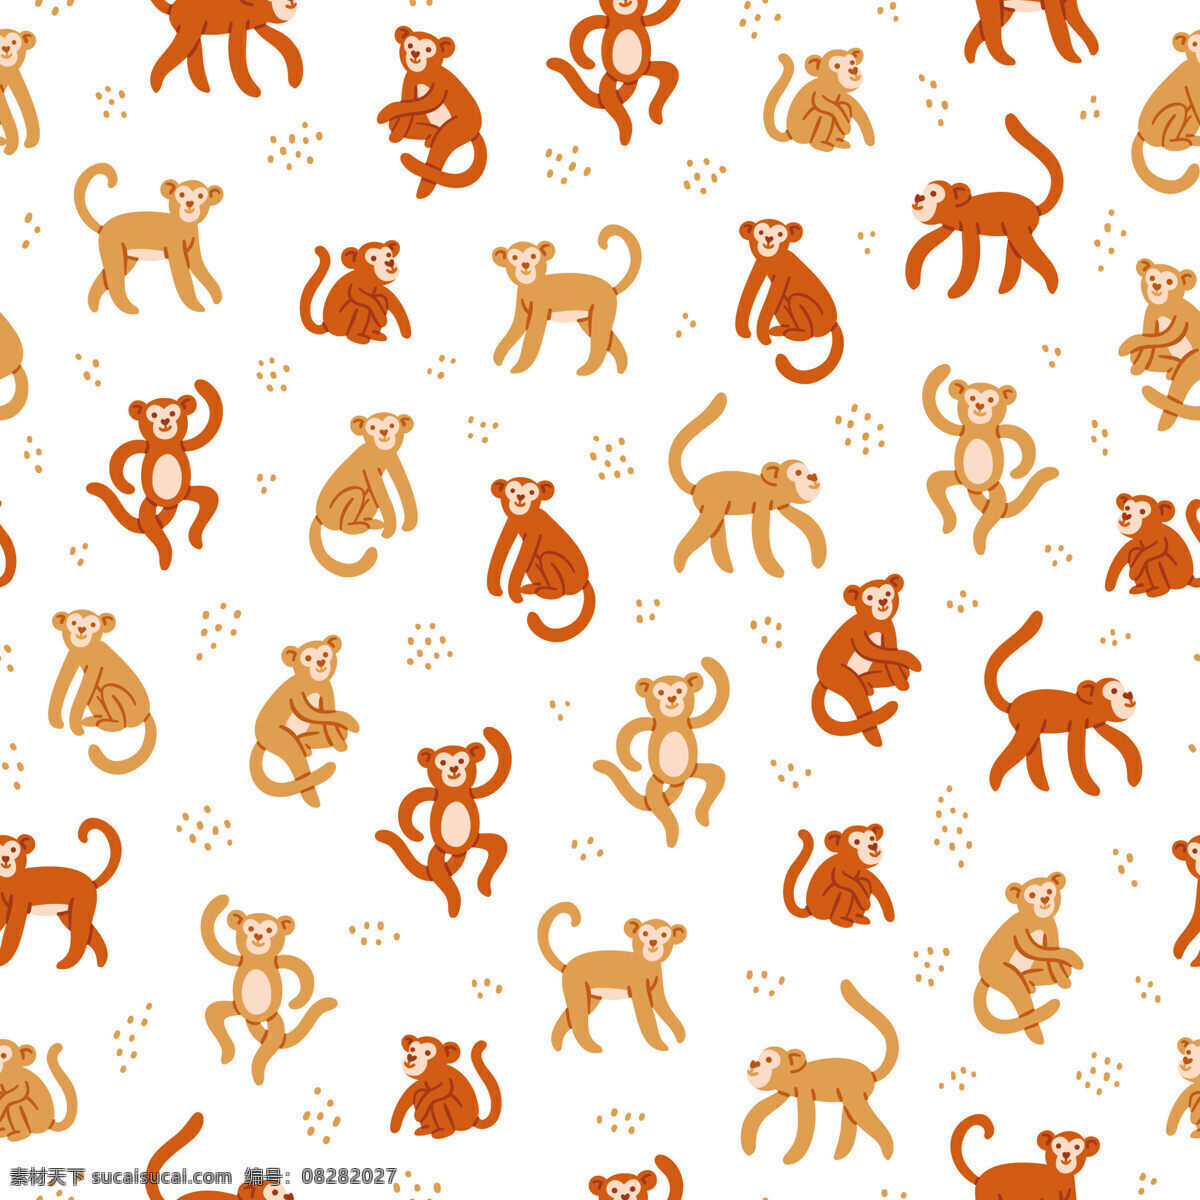 清新 橙红 色调 猴子 图案 壁纸 装饰设计 橙色系 壁纸图案 猴子图案 红色斑点